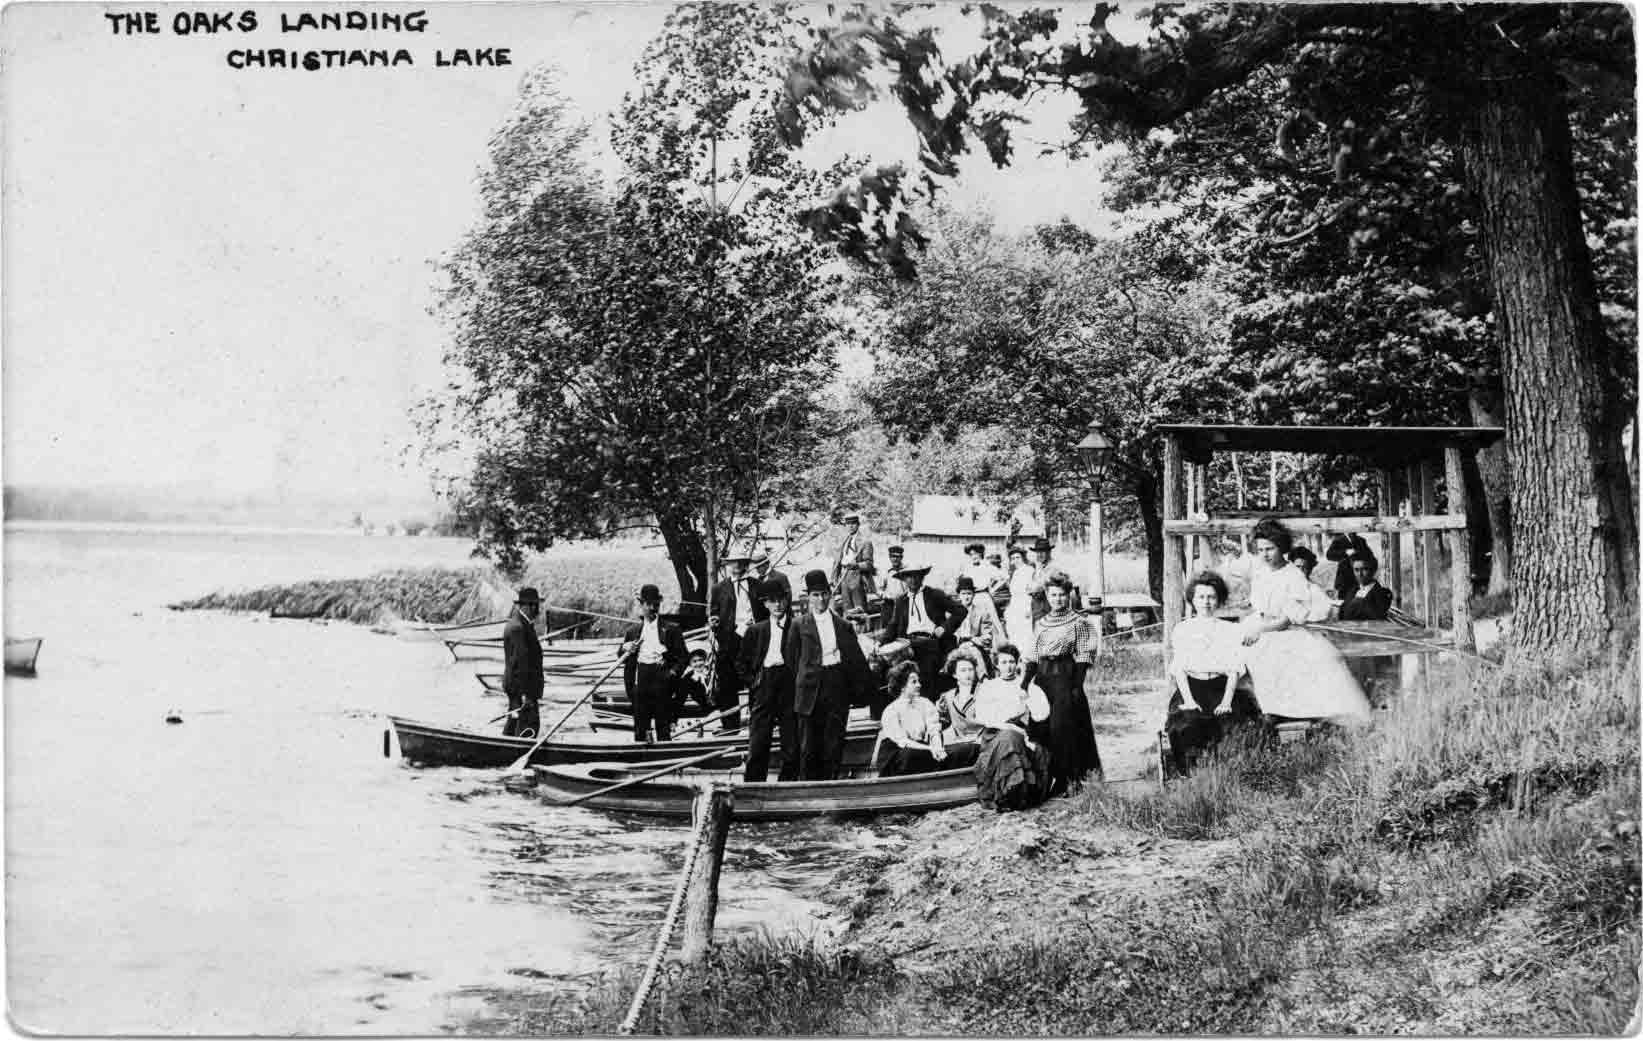 The Oaks Landing, Christiana Lake